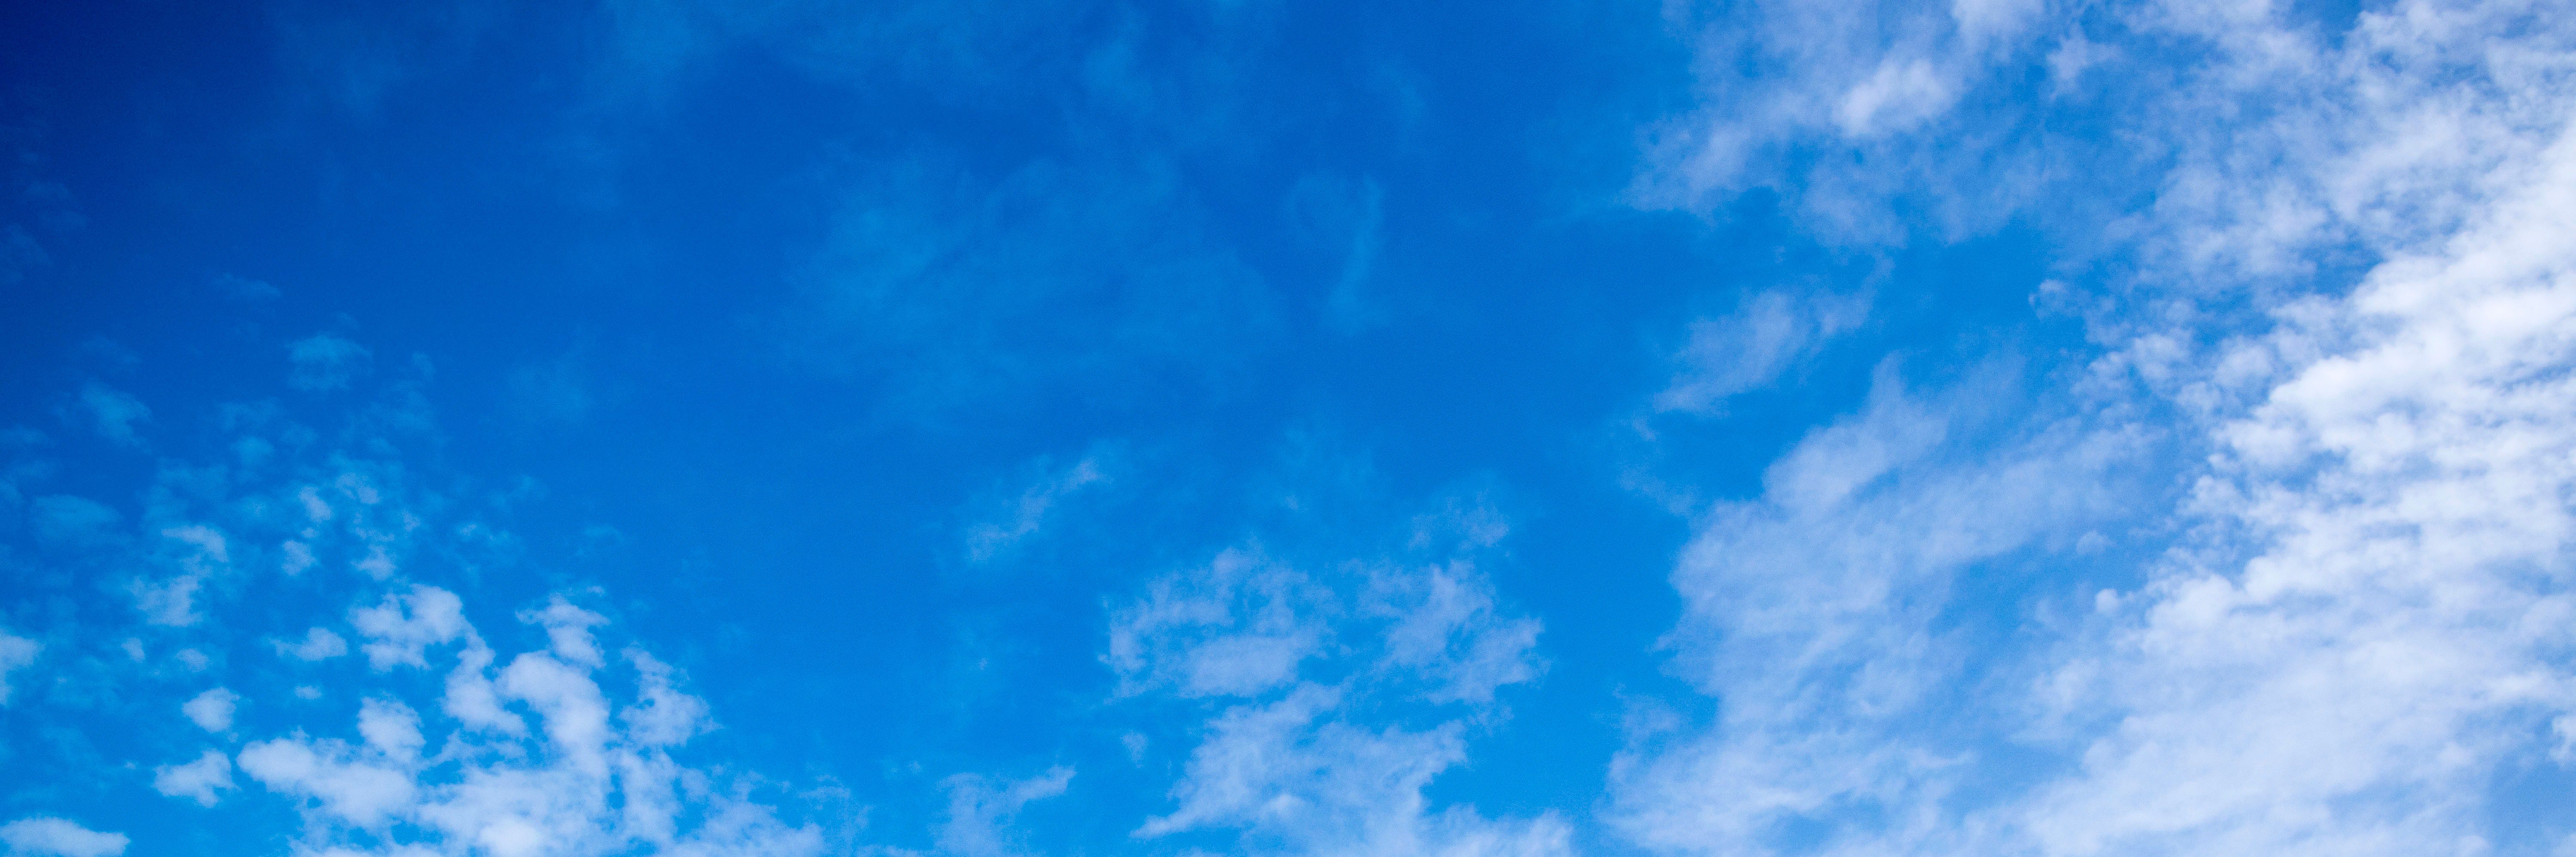 atmosphere-blue-sky-clouds-912110